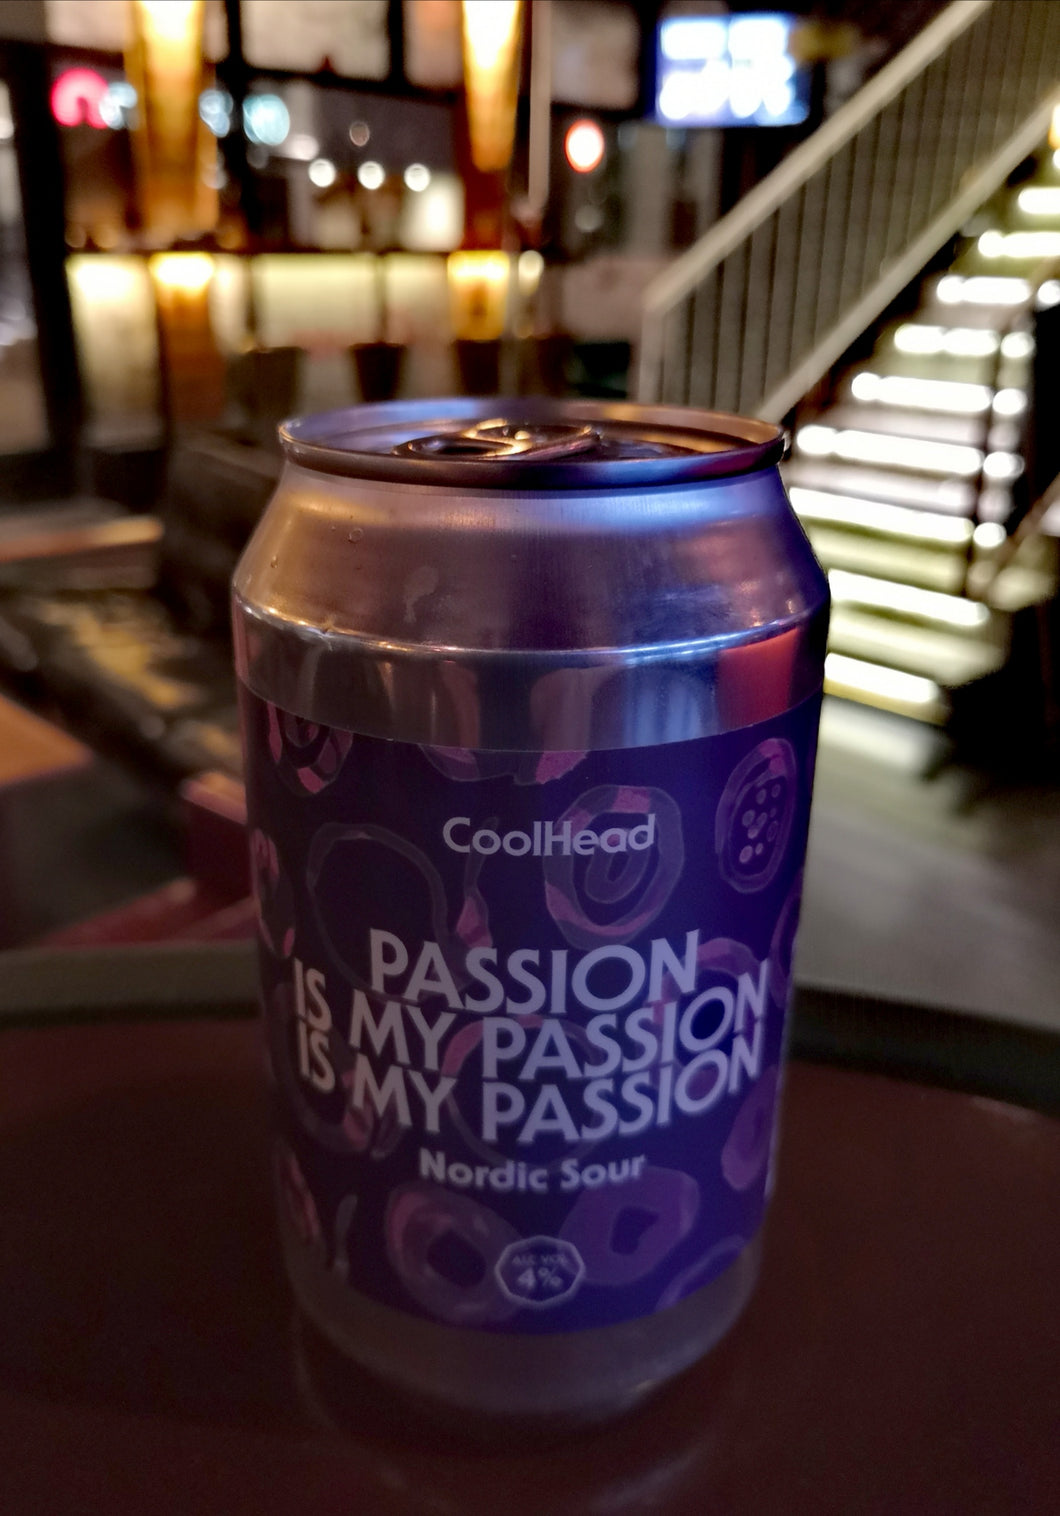 CoolHead Passion is my passion is my passion